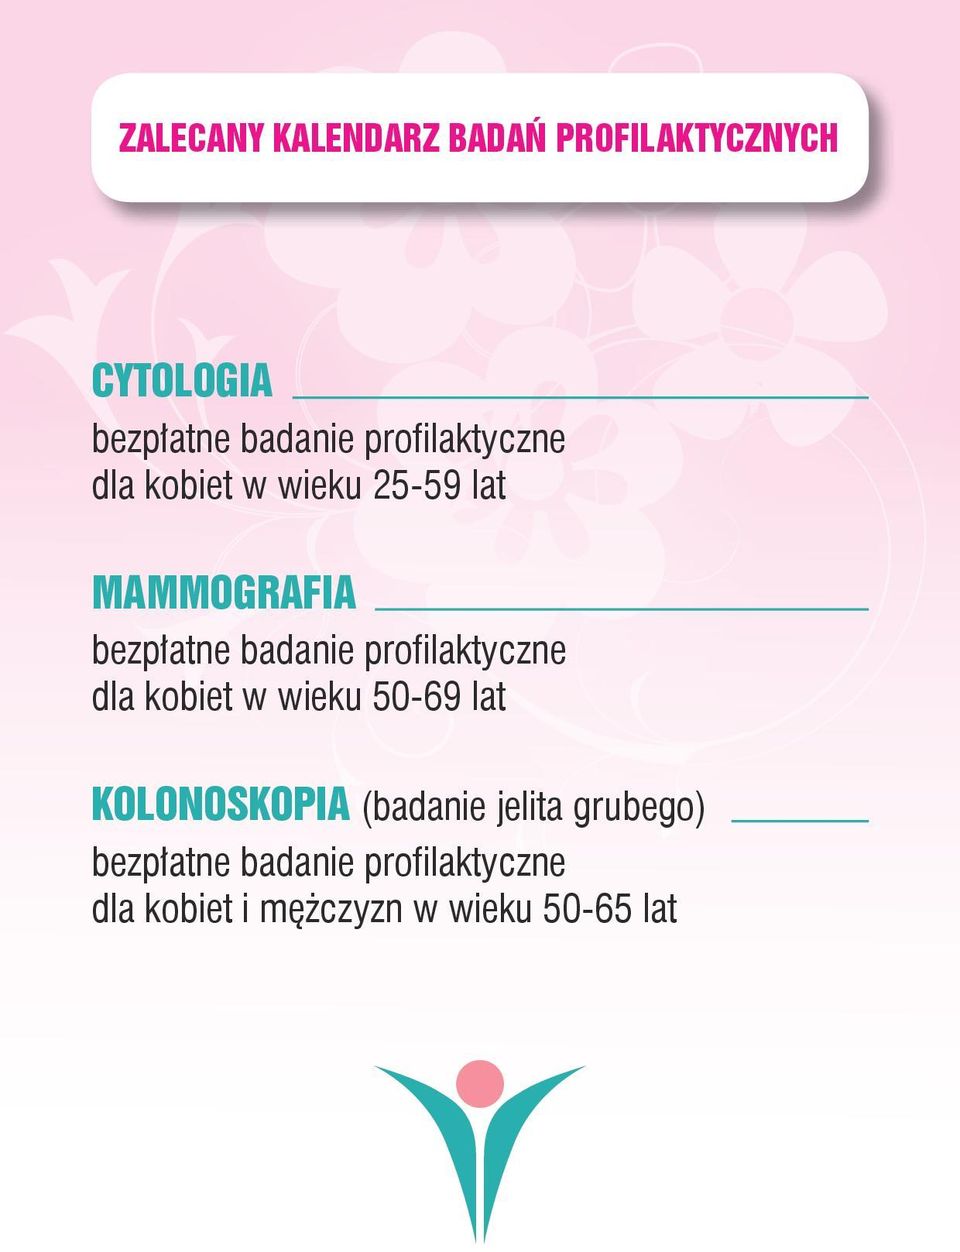 profilaktyczne dla kobiet w wieku 50-69 lat KOLONOSKOPIA (badanie jelita